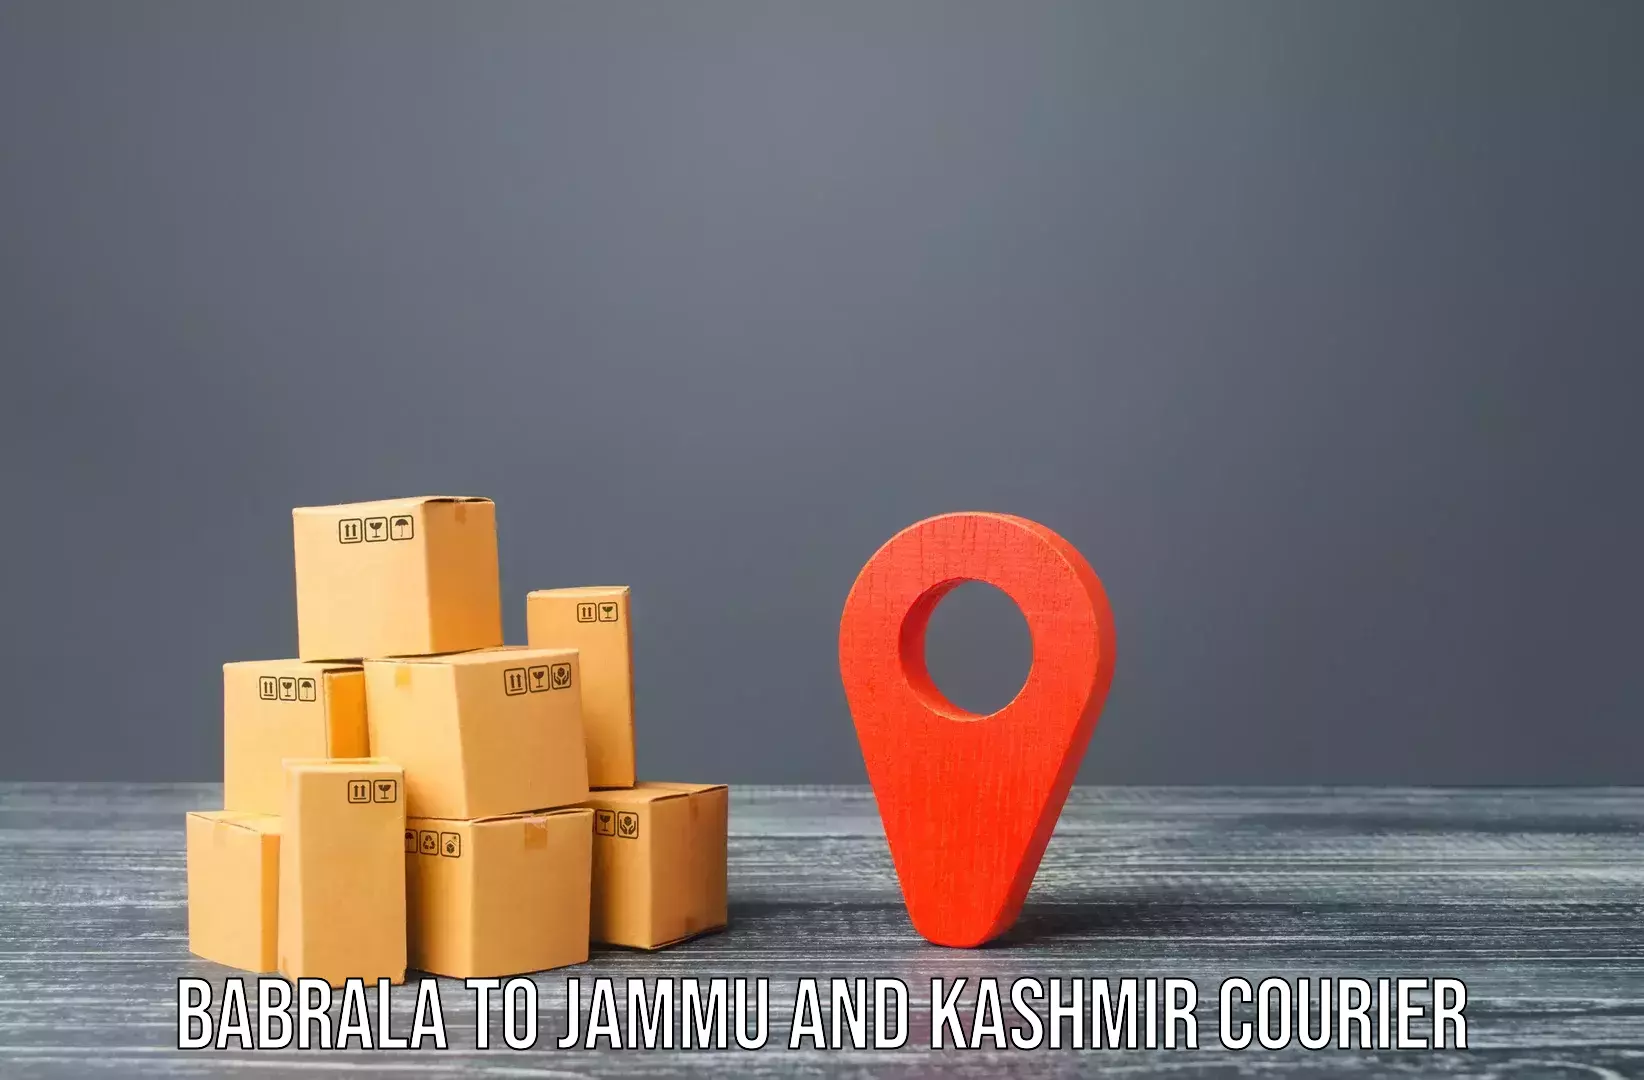 Furniture moving service Babrala to IIT Jammu